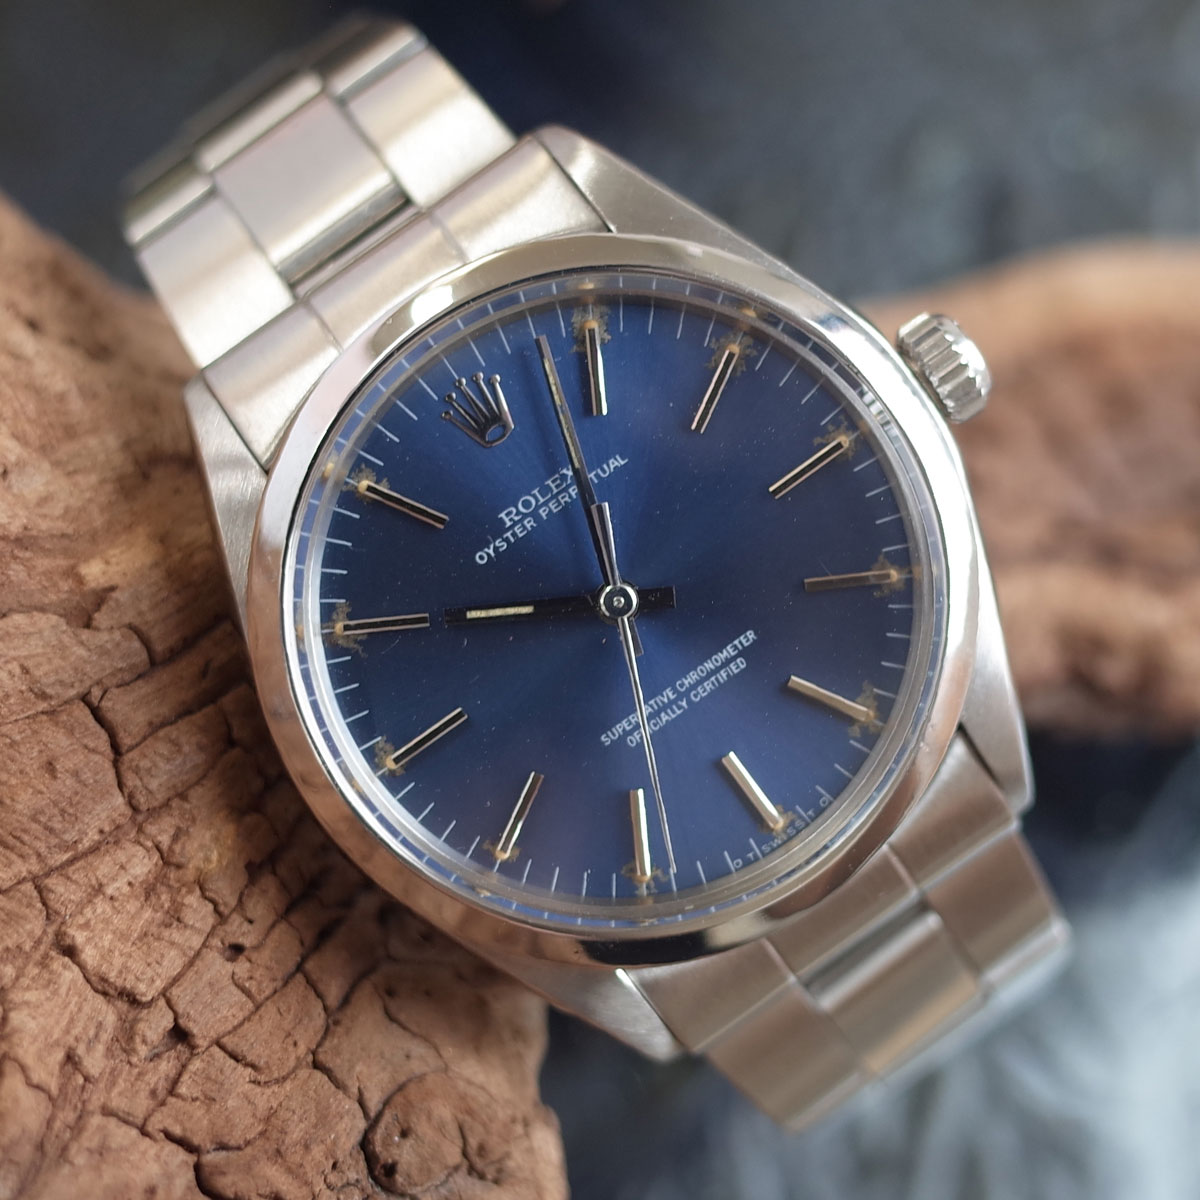 ロレックス 1002 オイスターパーペチュアル 青文字盤 シグマダイヤル 巻きブレス 1972年 SS 自動巻 メンズ 腕時計 ROLEX アンティーク OH済1年保証